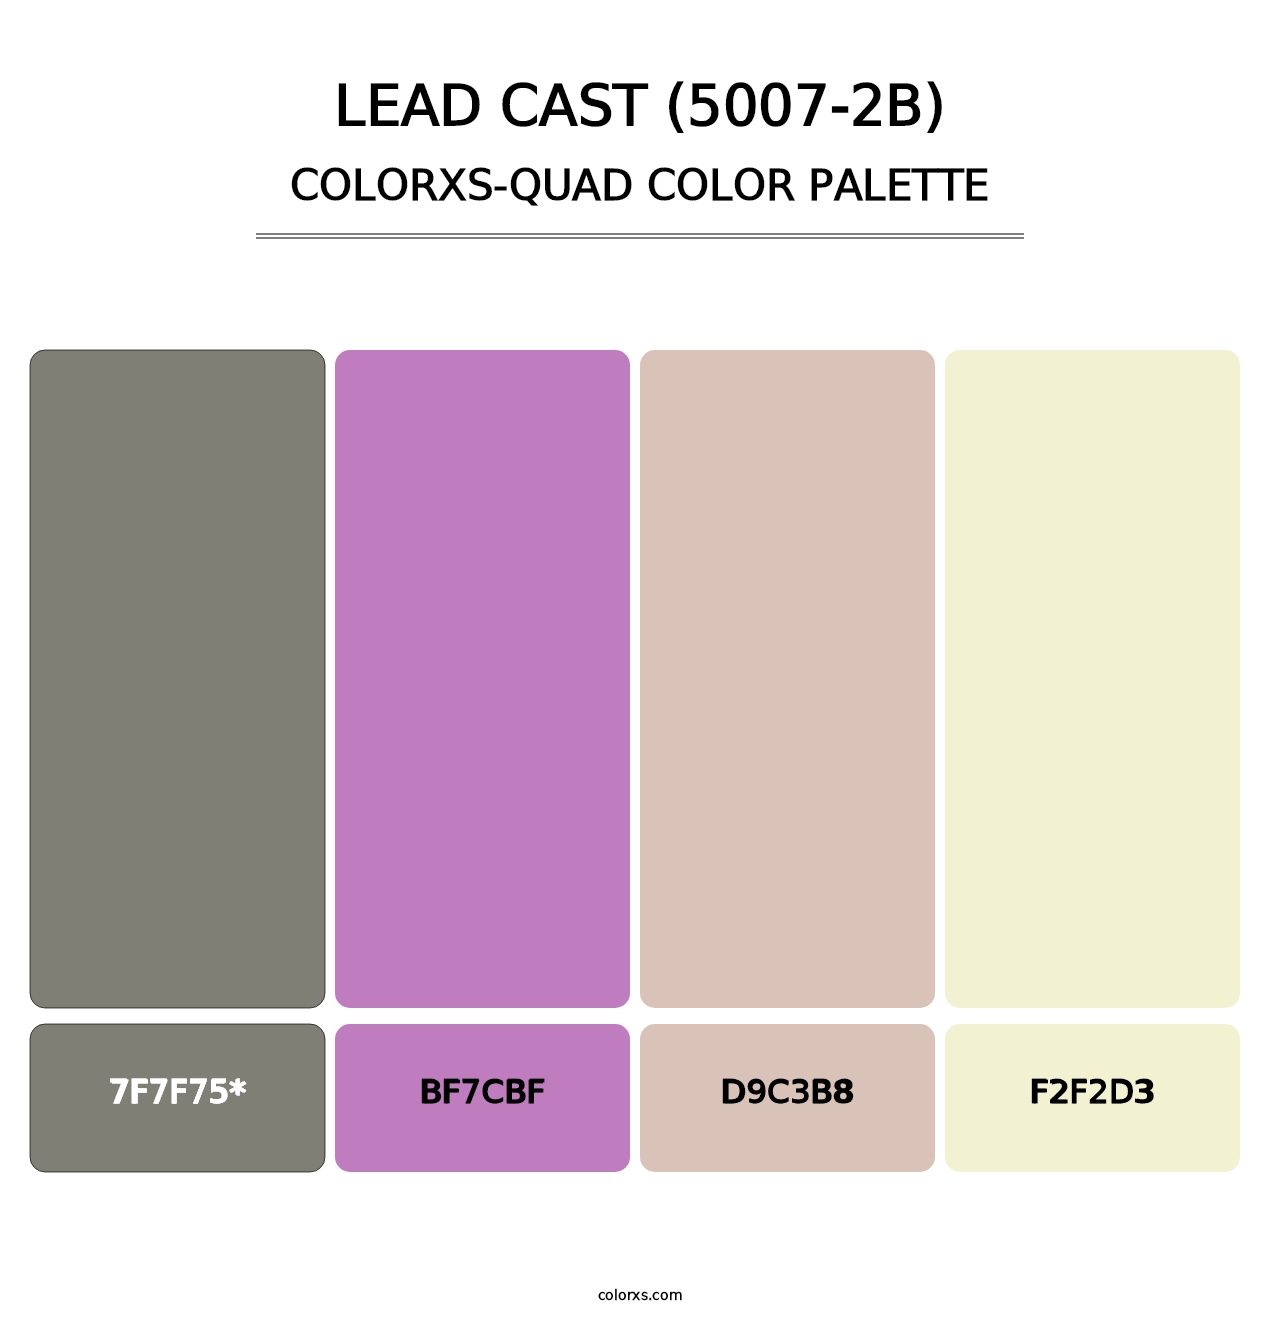 Lead Cast (5007-2B) - Colorxs Quad Palette